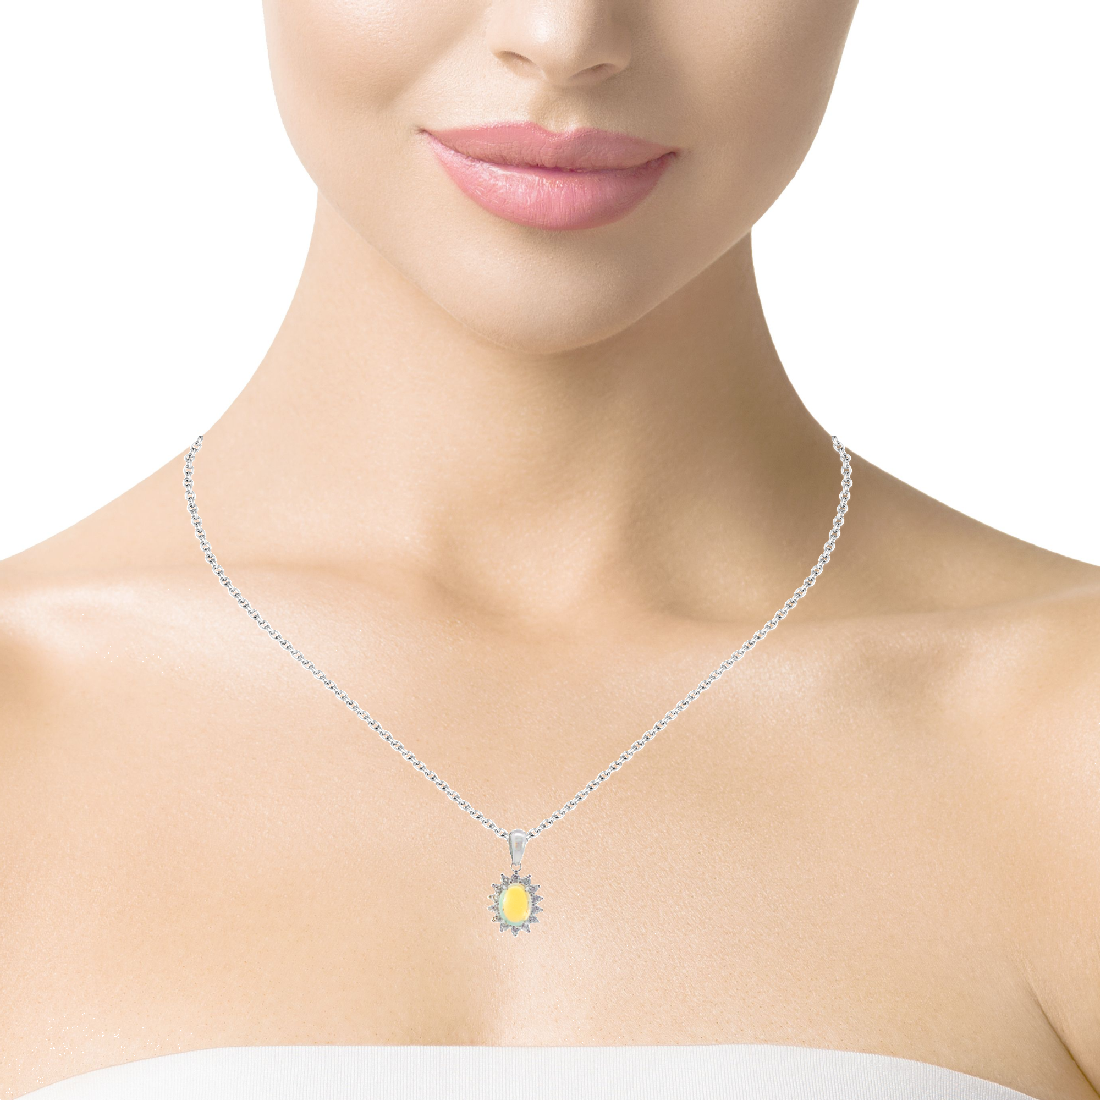 Sterling Silver 7x5mm Light Opal cluster pendant - Masterpiece Jewellery Opal & Gems Sydney Australia | Online Shop